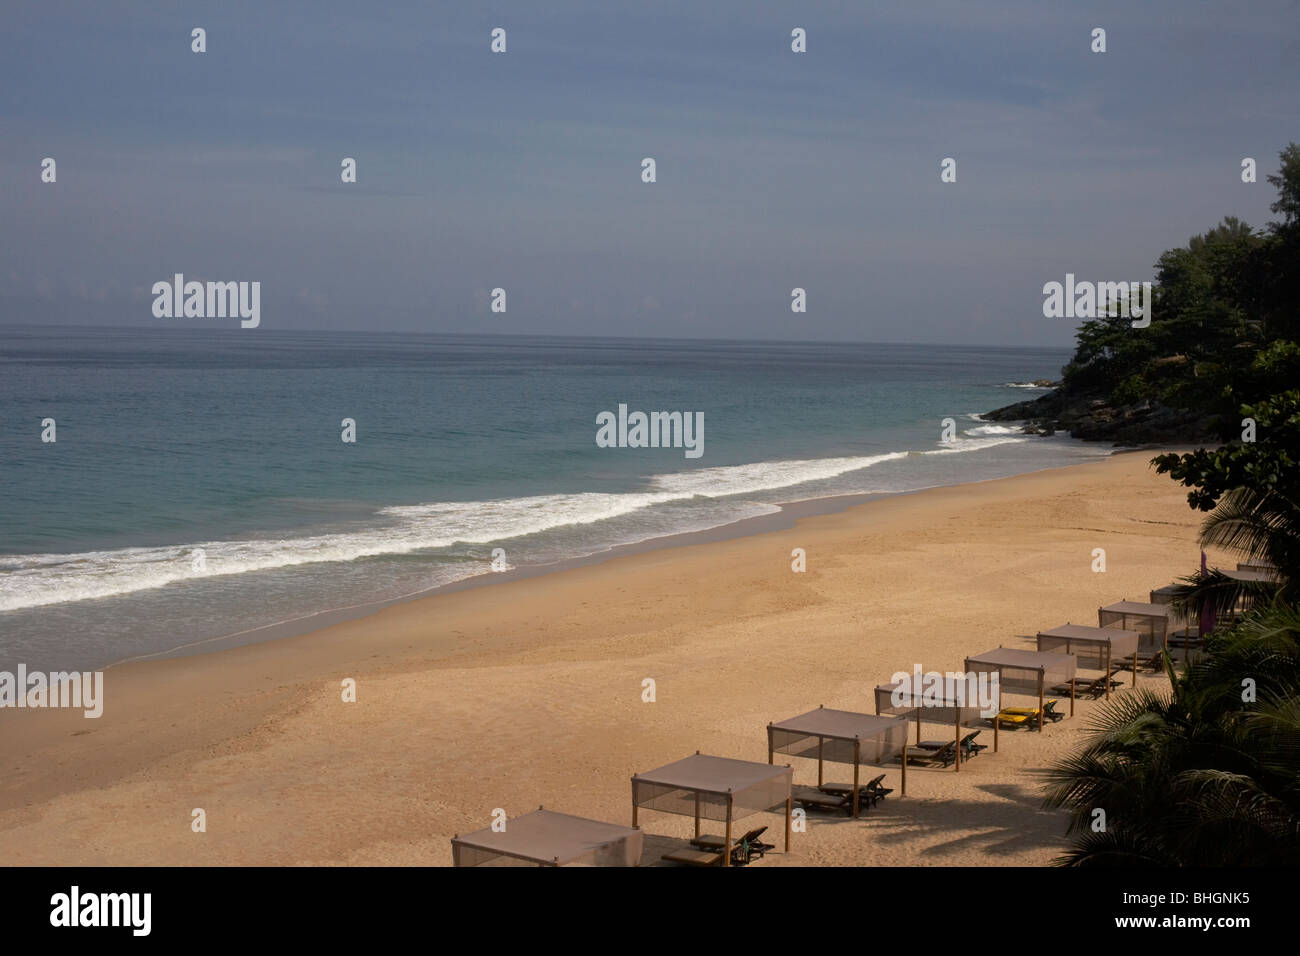 Spiaggia deserta con lettini per prendere il sole Foto Stock